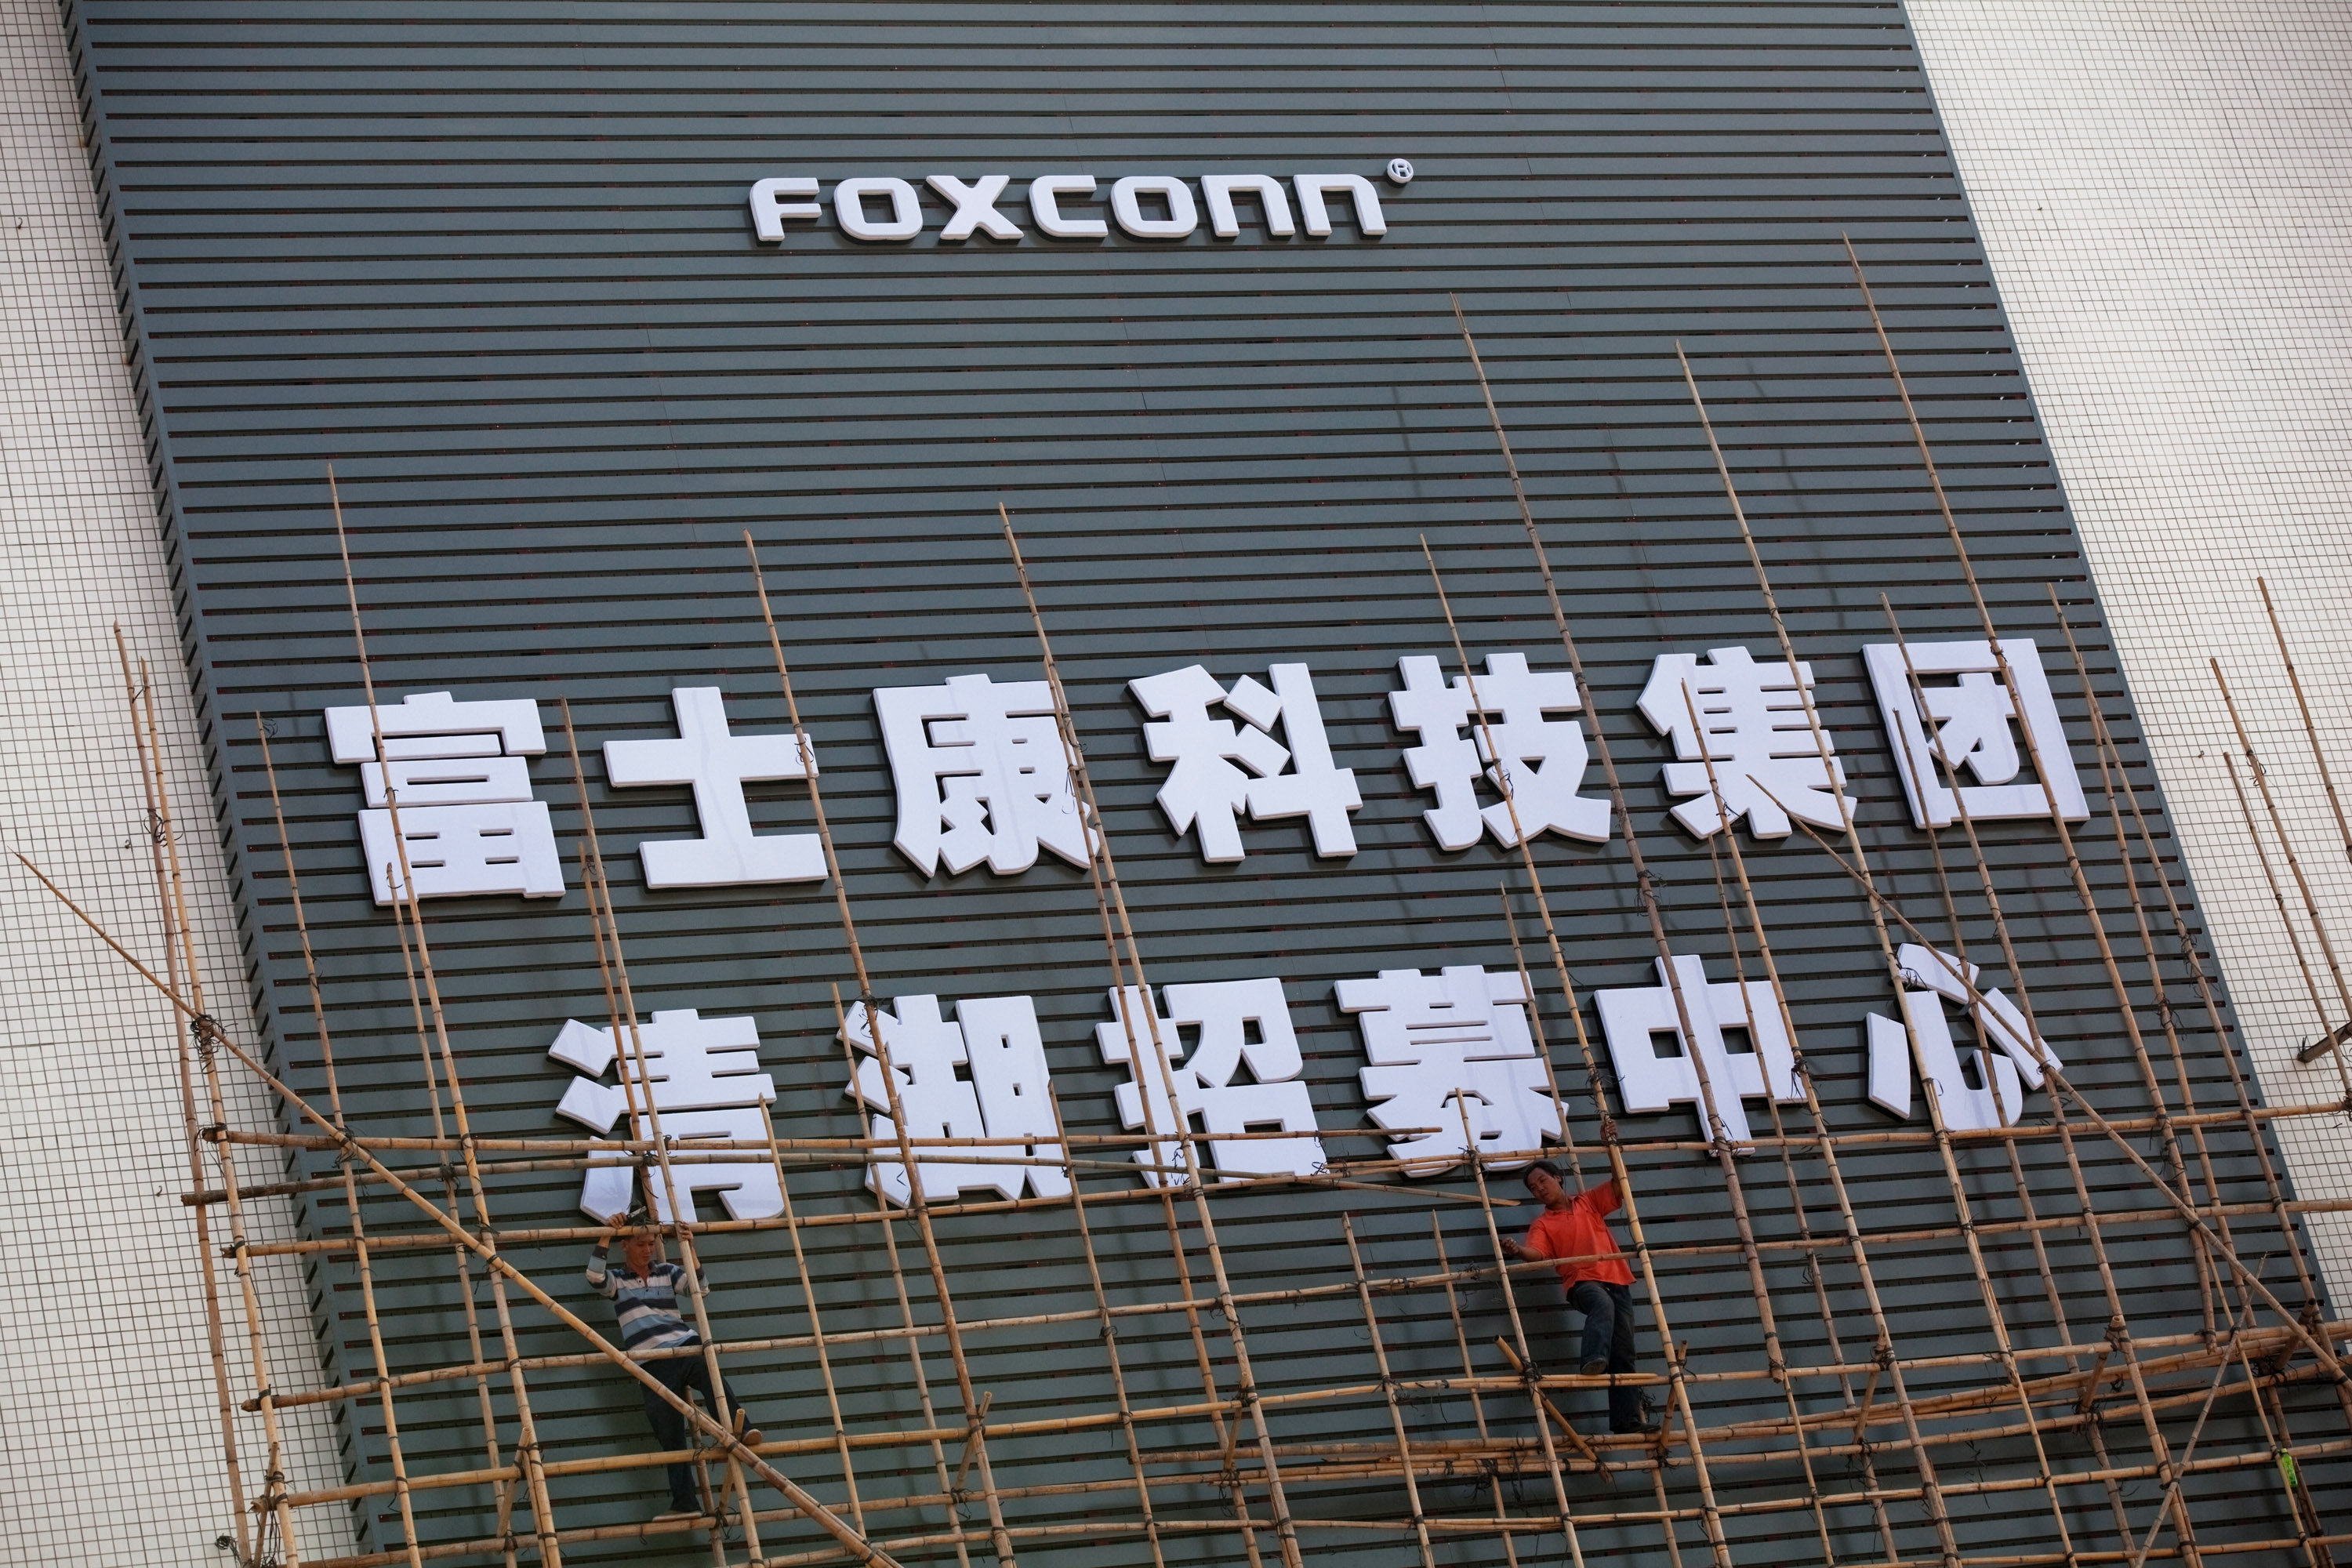 Foxconn in Shenzhen, China